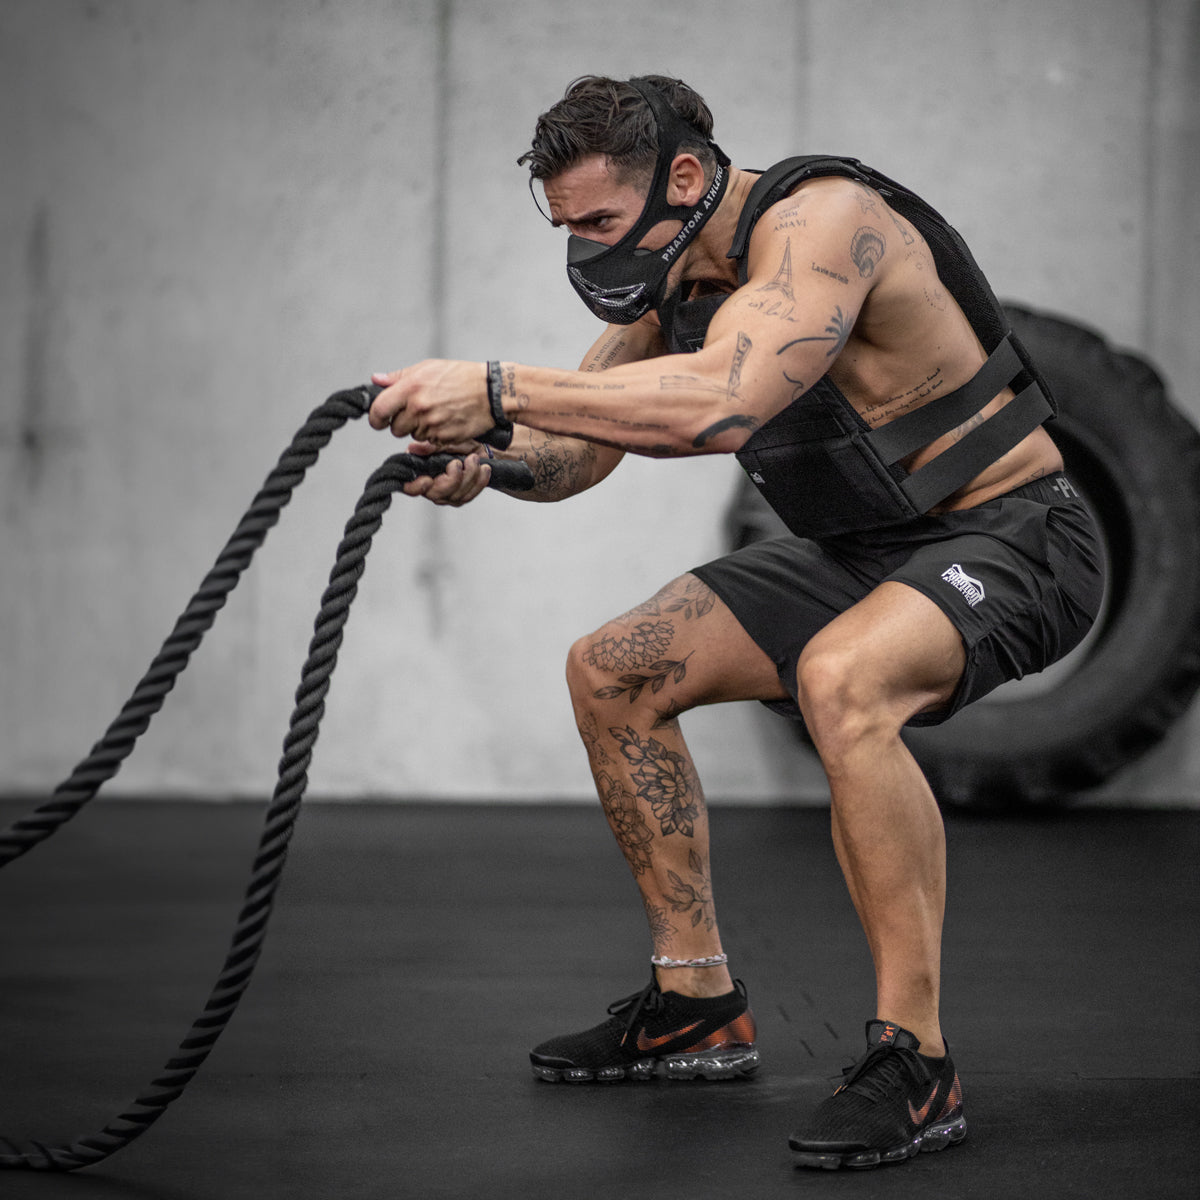 Die Phantom Trainingsmaske hilft dir dabei dein Training auf das nächste Level zu heben. Egal ob im Kraftsport oder auch beim Kampfsport. Jetzt in limitierter Carbon Edition.